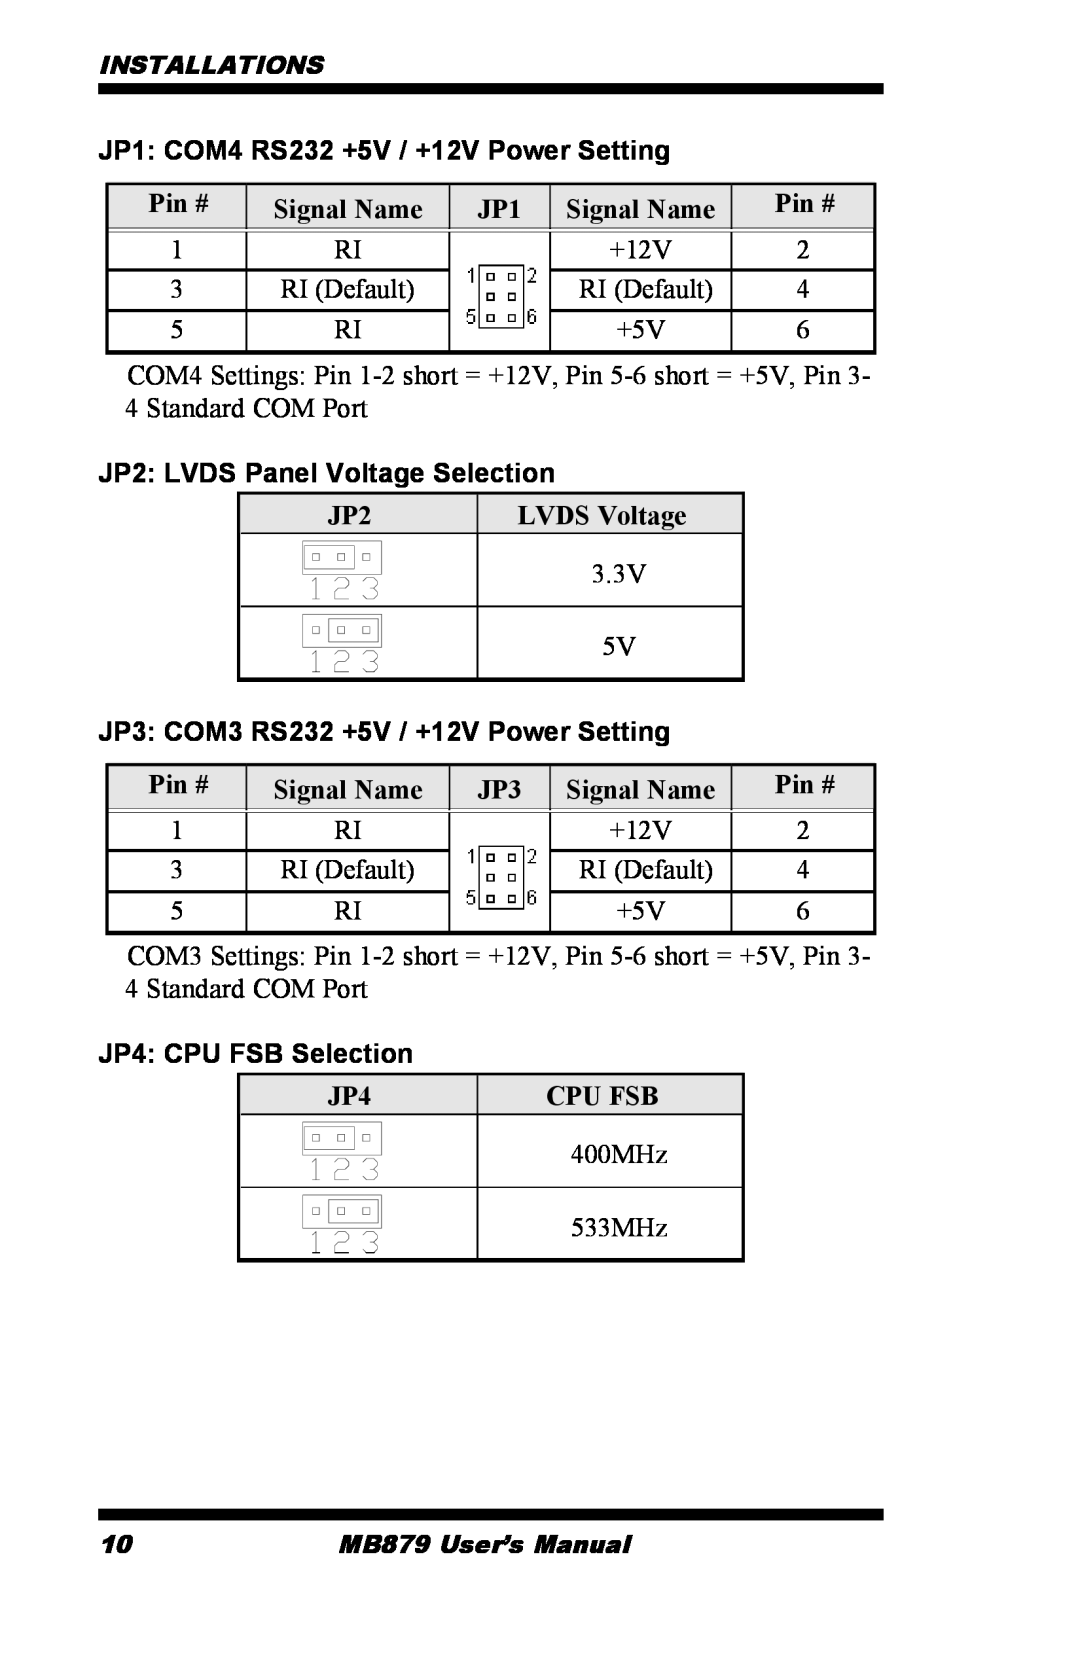 Intel MB879 user manual JP1 COM4 RS232 +5V / +12V Power Setting, JP2 LVDS Panel Voltage Selection, JP4 CPU FSB Selection 